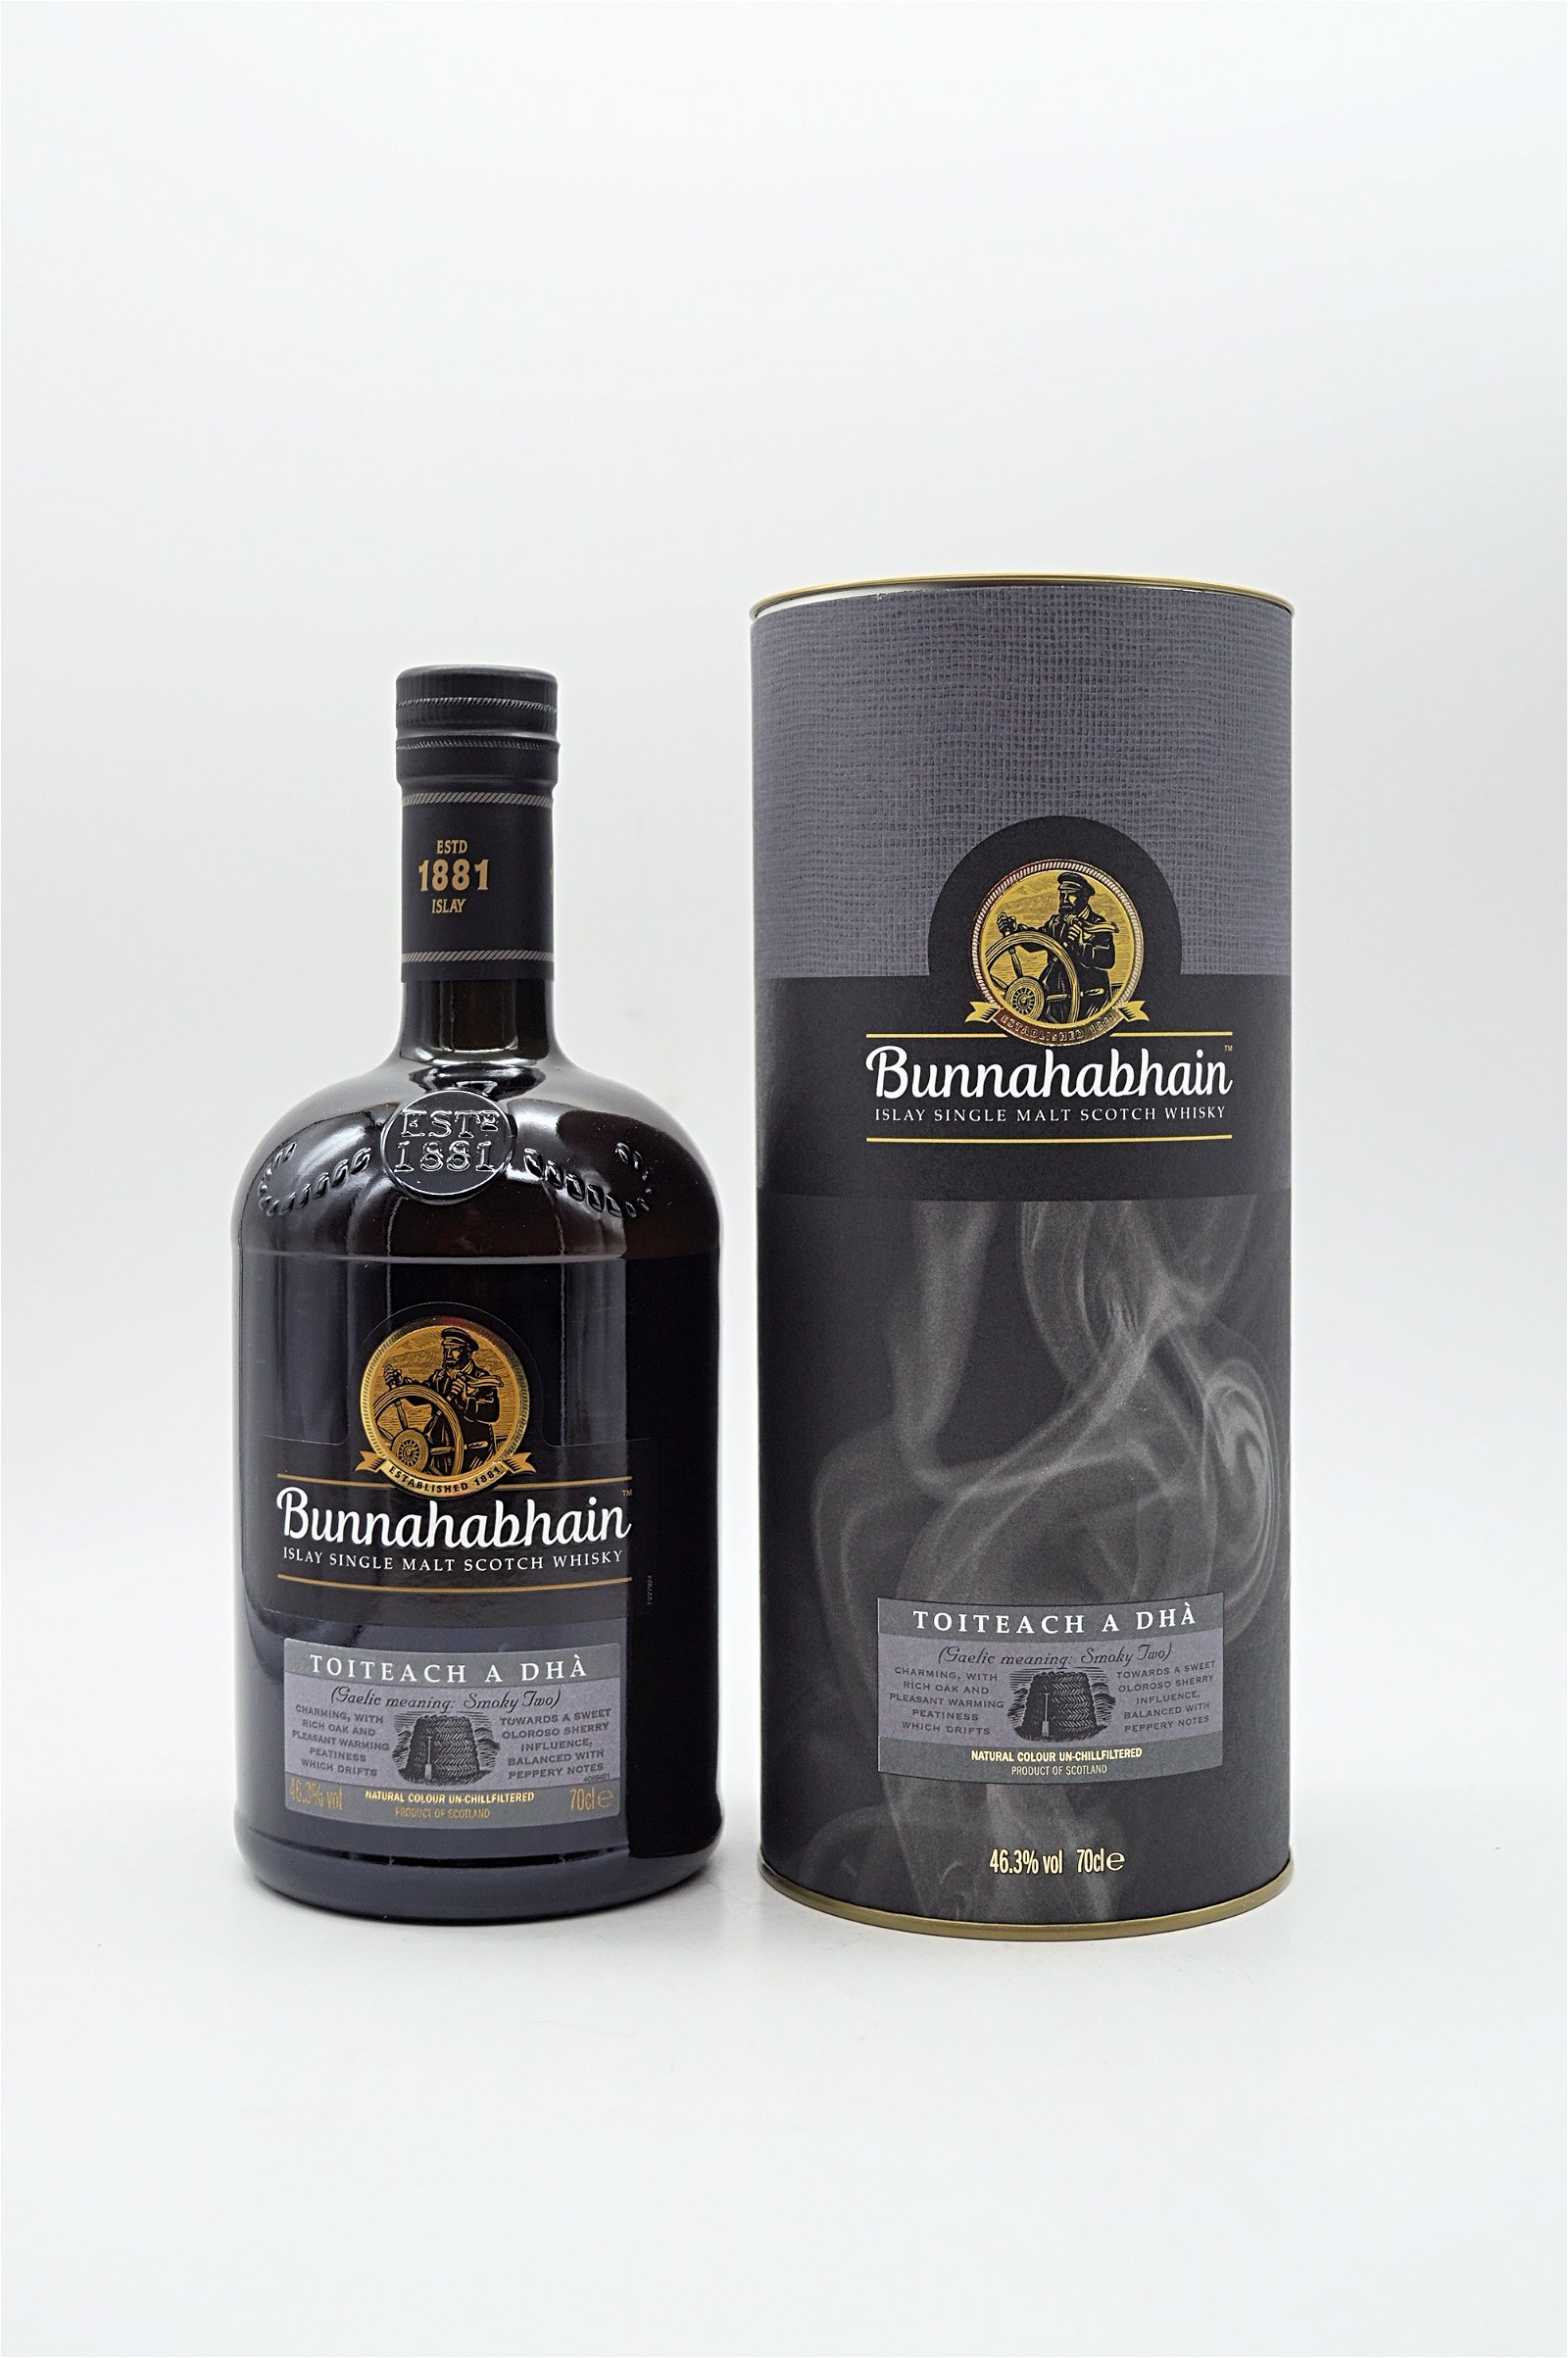 Bunnahabhain Toiteach A Dha Single Malt Scotch Whisky